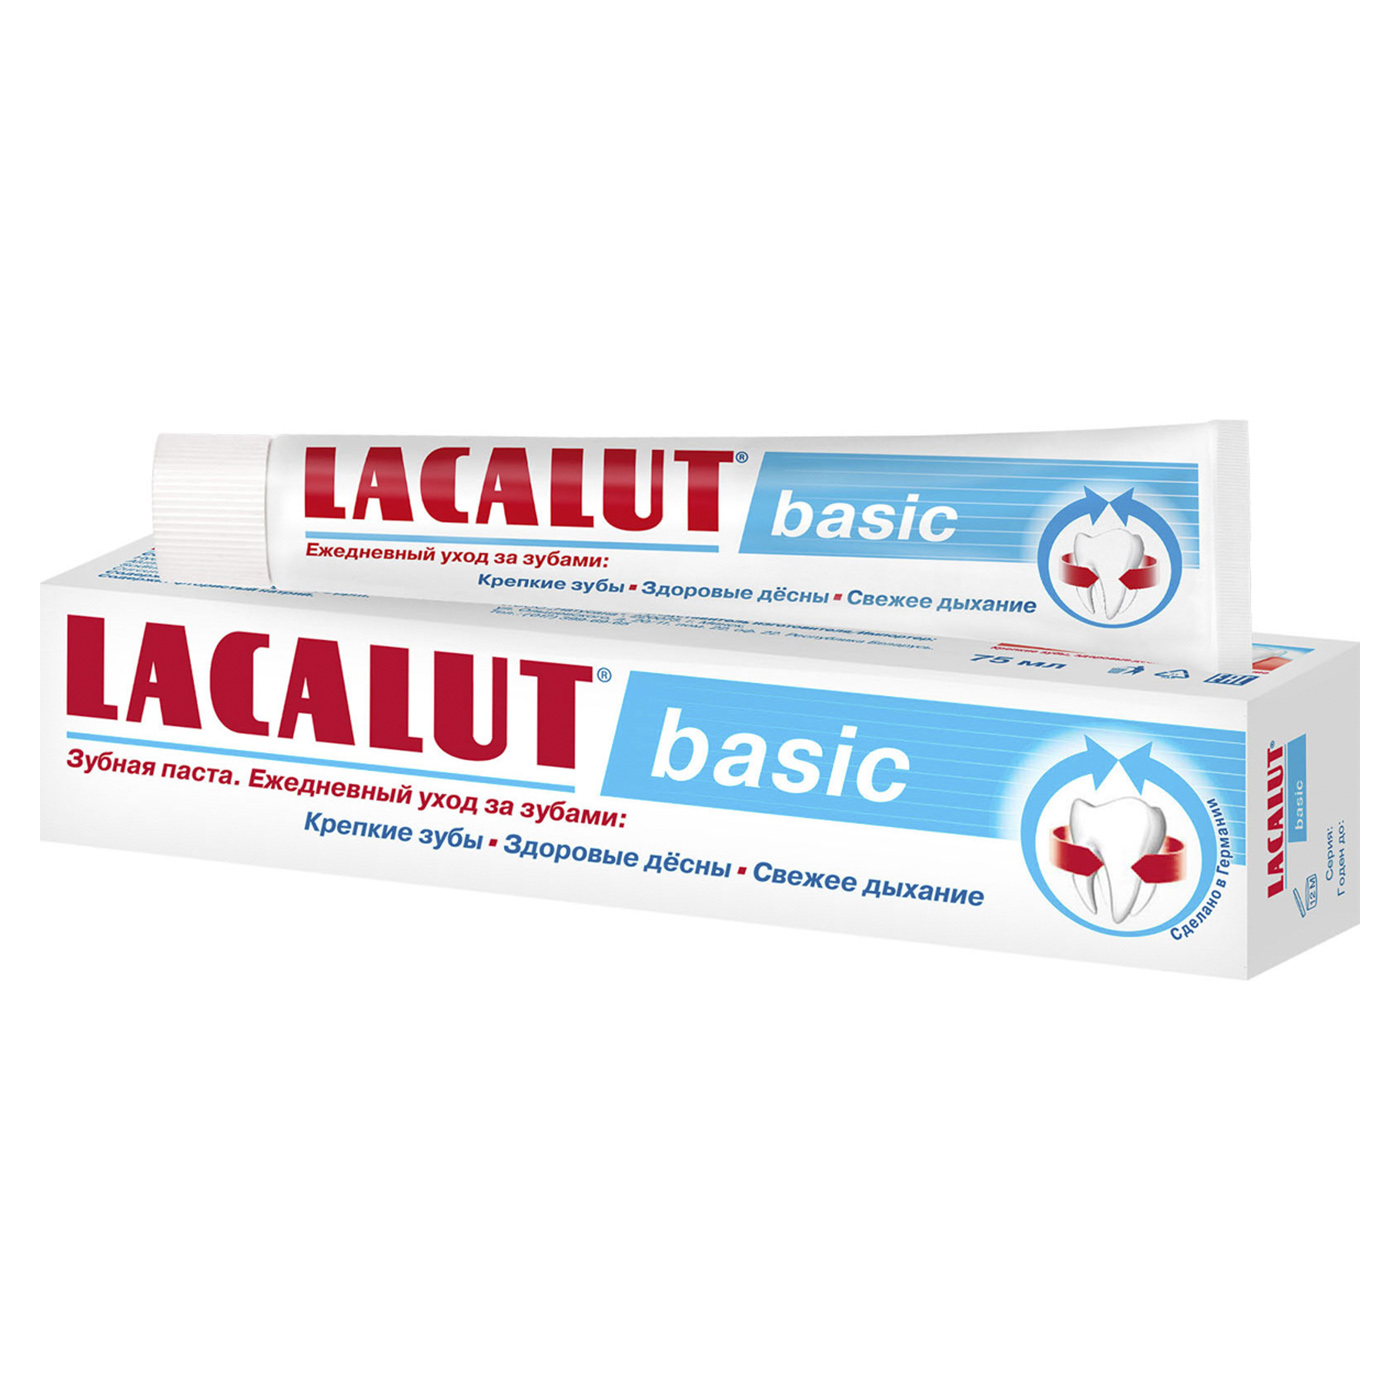 Купить Lacalut Зубная паста Бейсик 75 мл (Lacalut, Зубные пасты), Германия